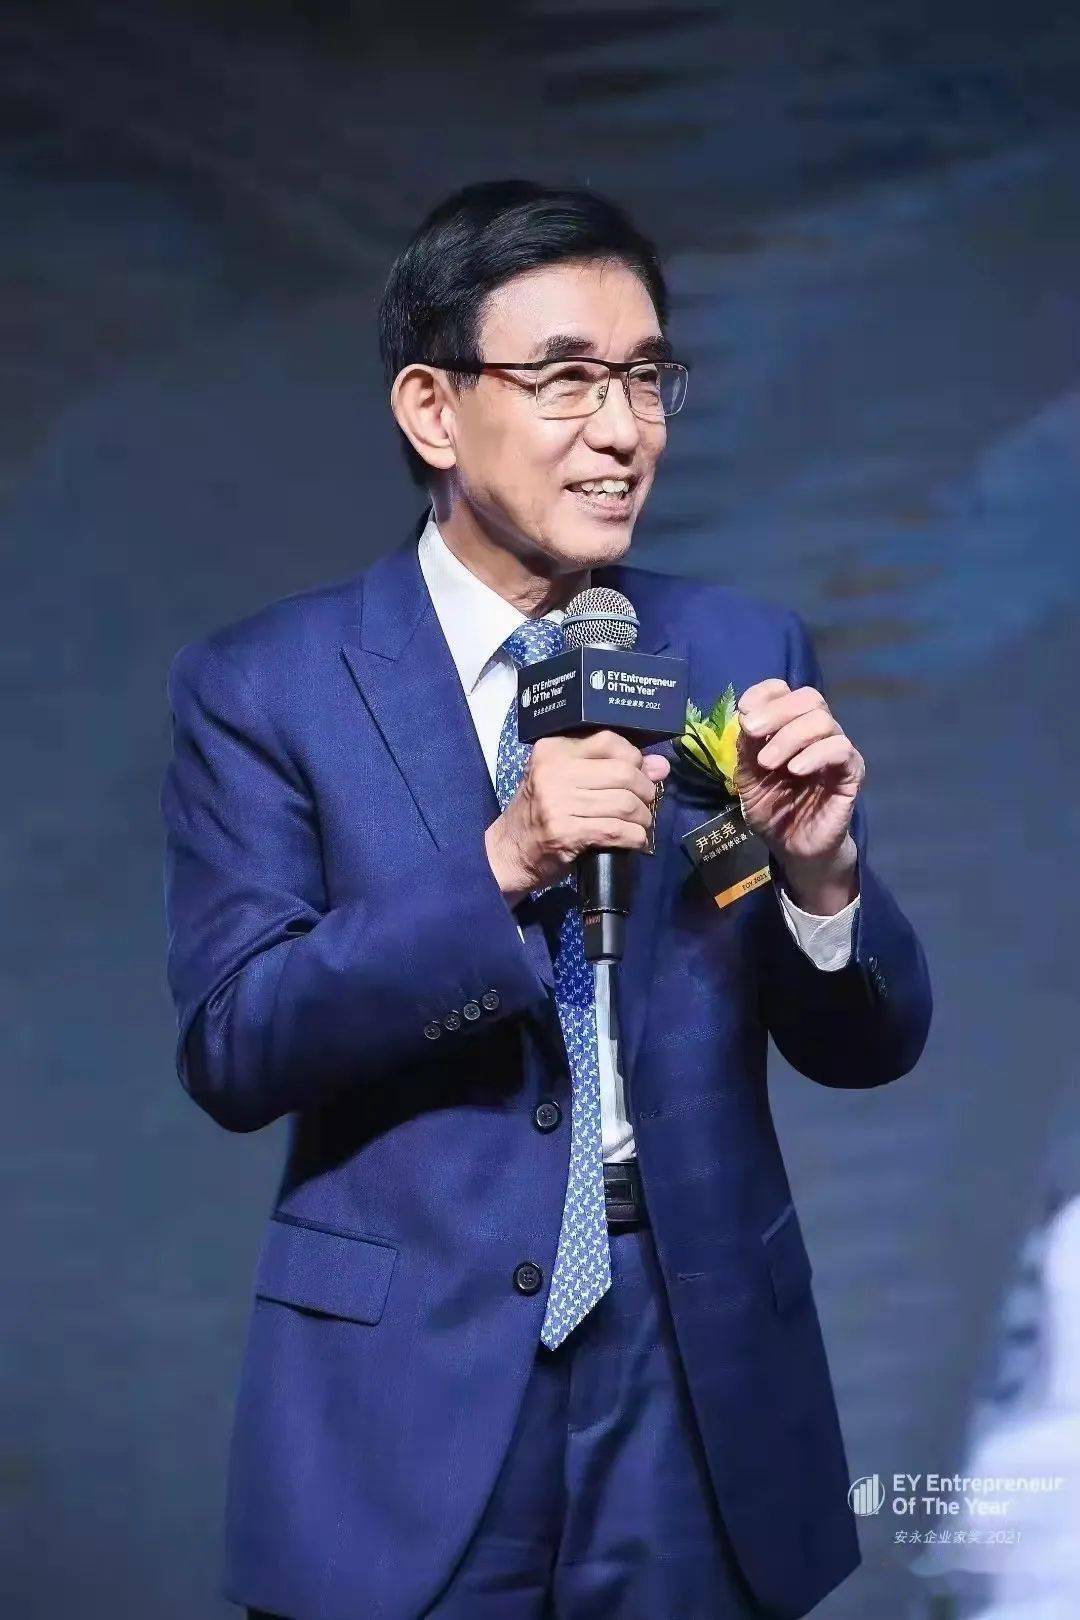 中微公司董事长尹志尧博士荣膺安永企业家奖2021中国大陆大奖